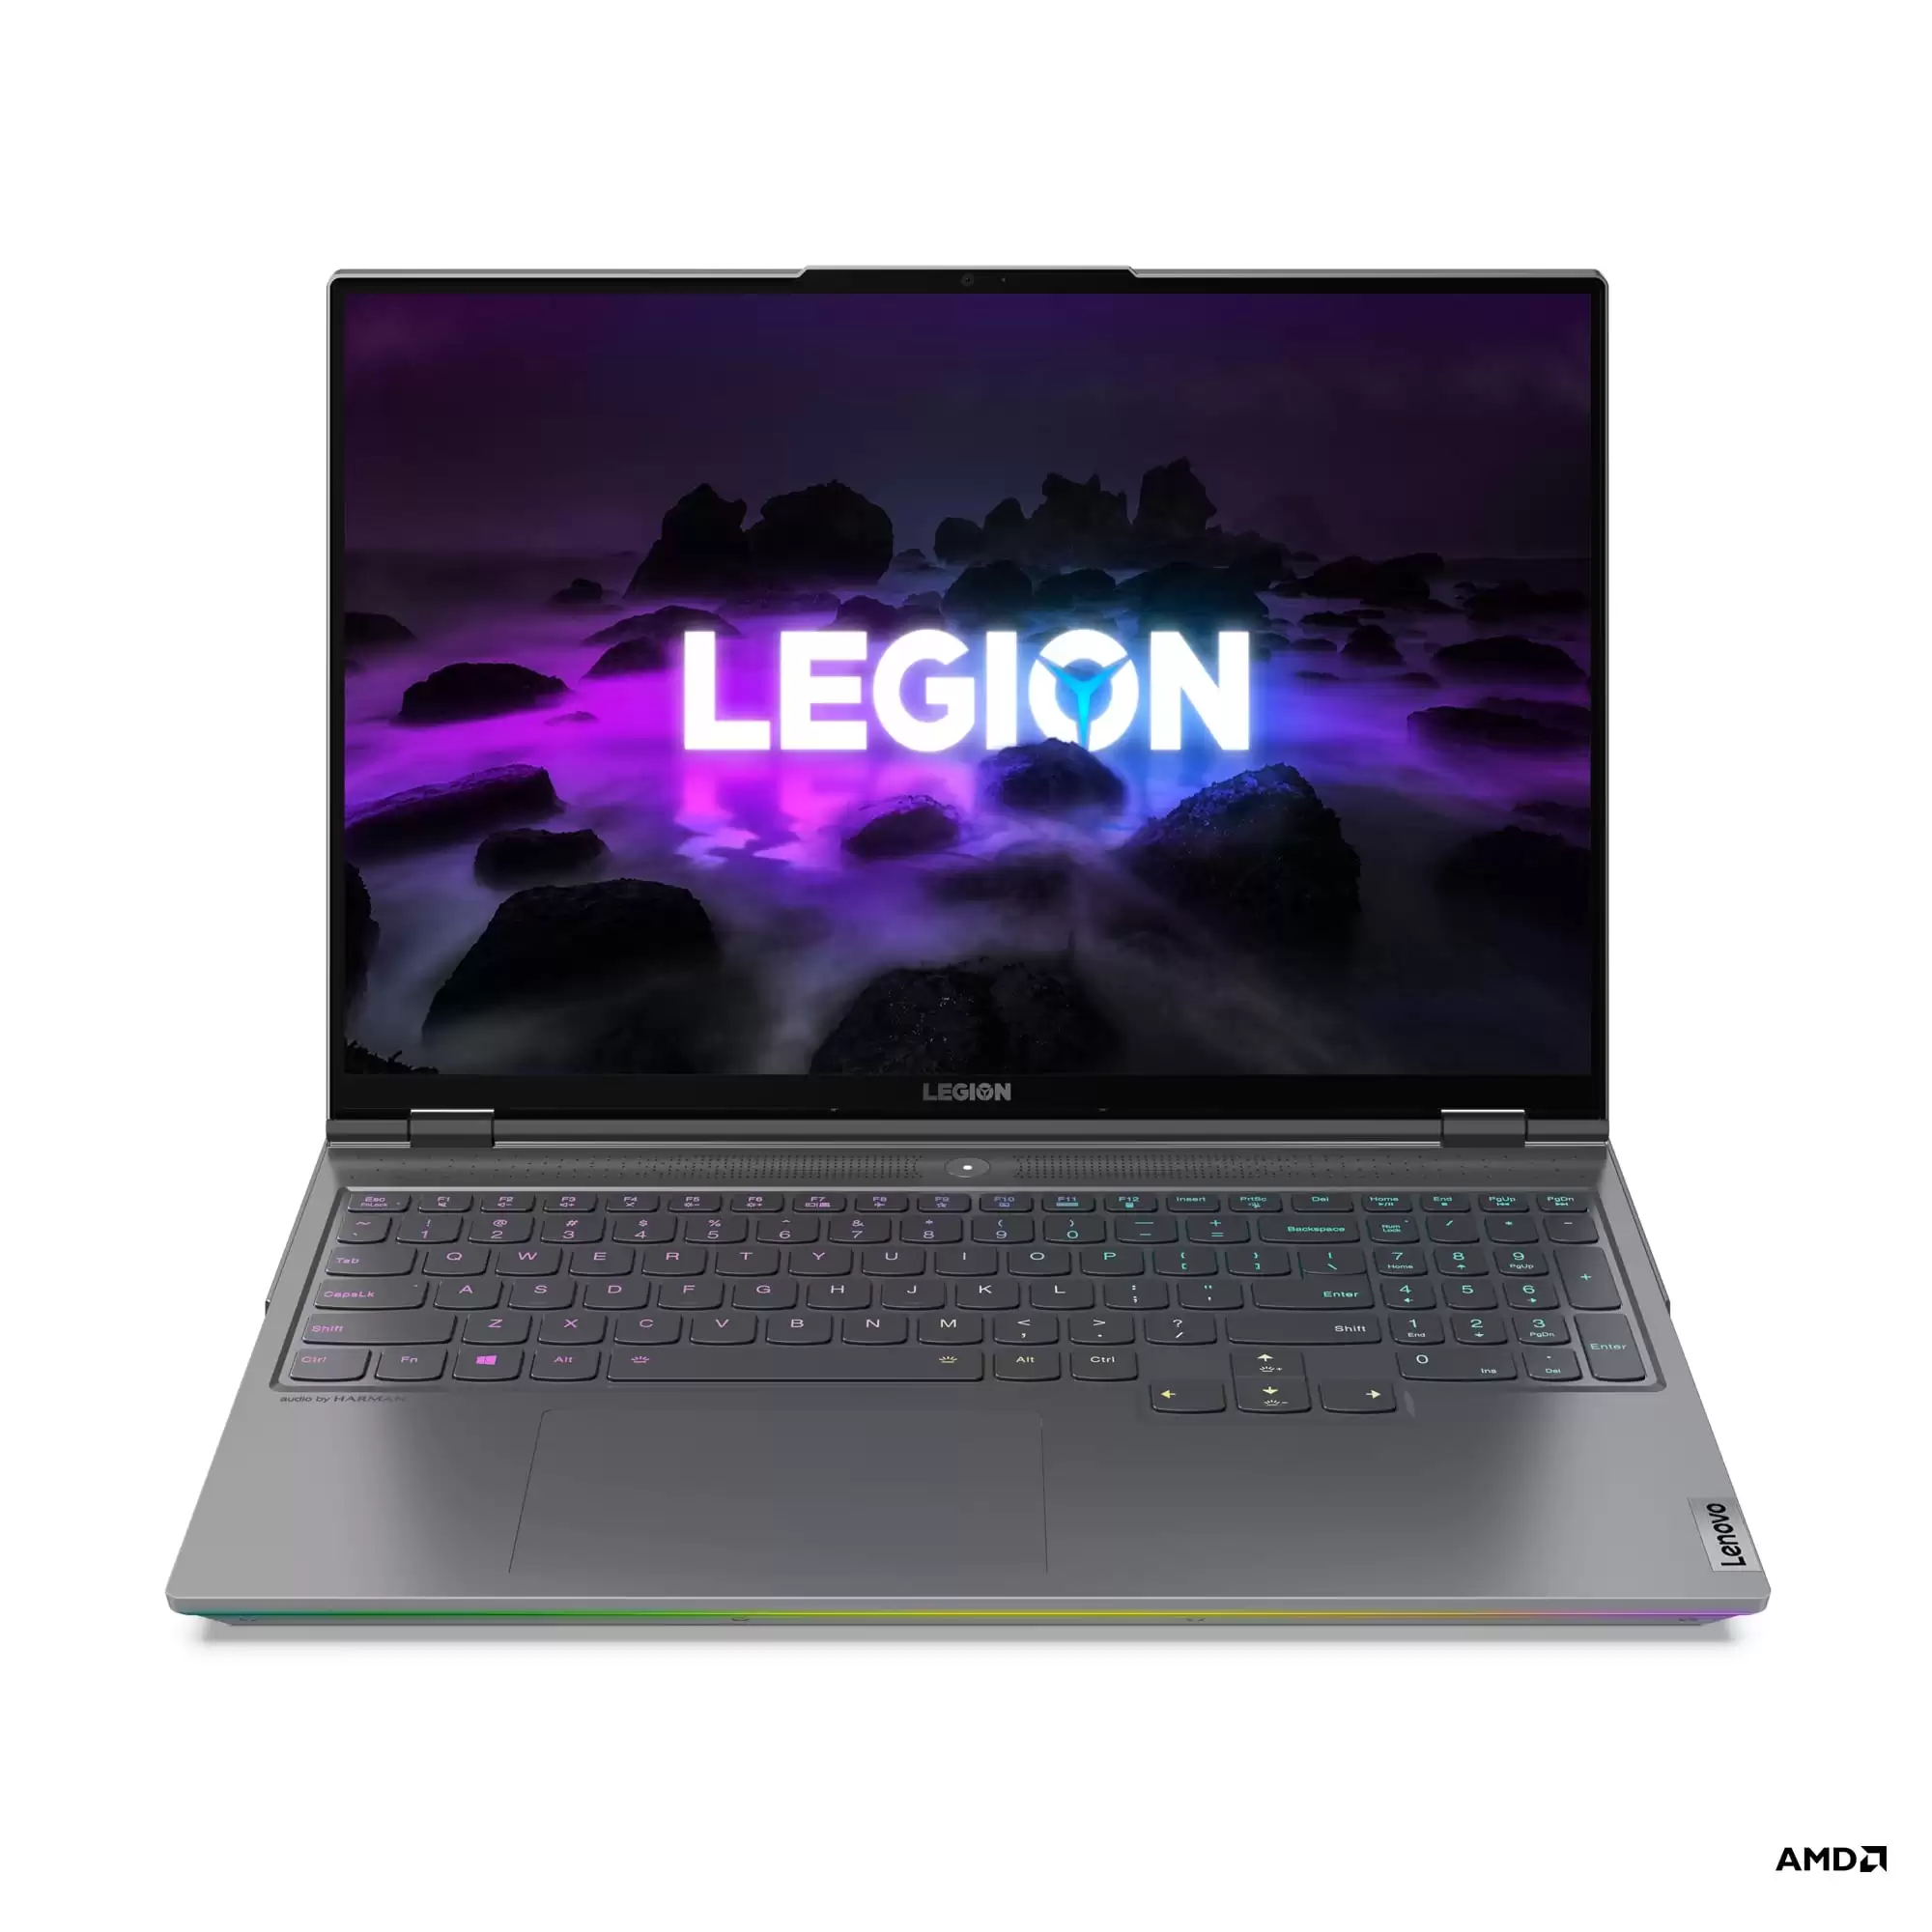 Legion 7 1 | Legion 5 Pro | เปิดตัว Lenovo Legion ไลน์อัพใหม่ล่าสุด ฟีเจอร์จัดเต็มเอาใจเกมเมอร์ยุค 2021